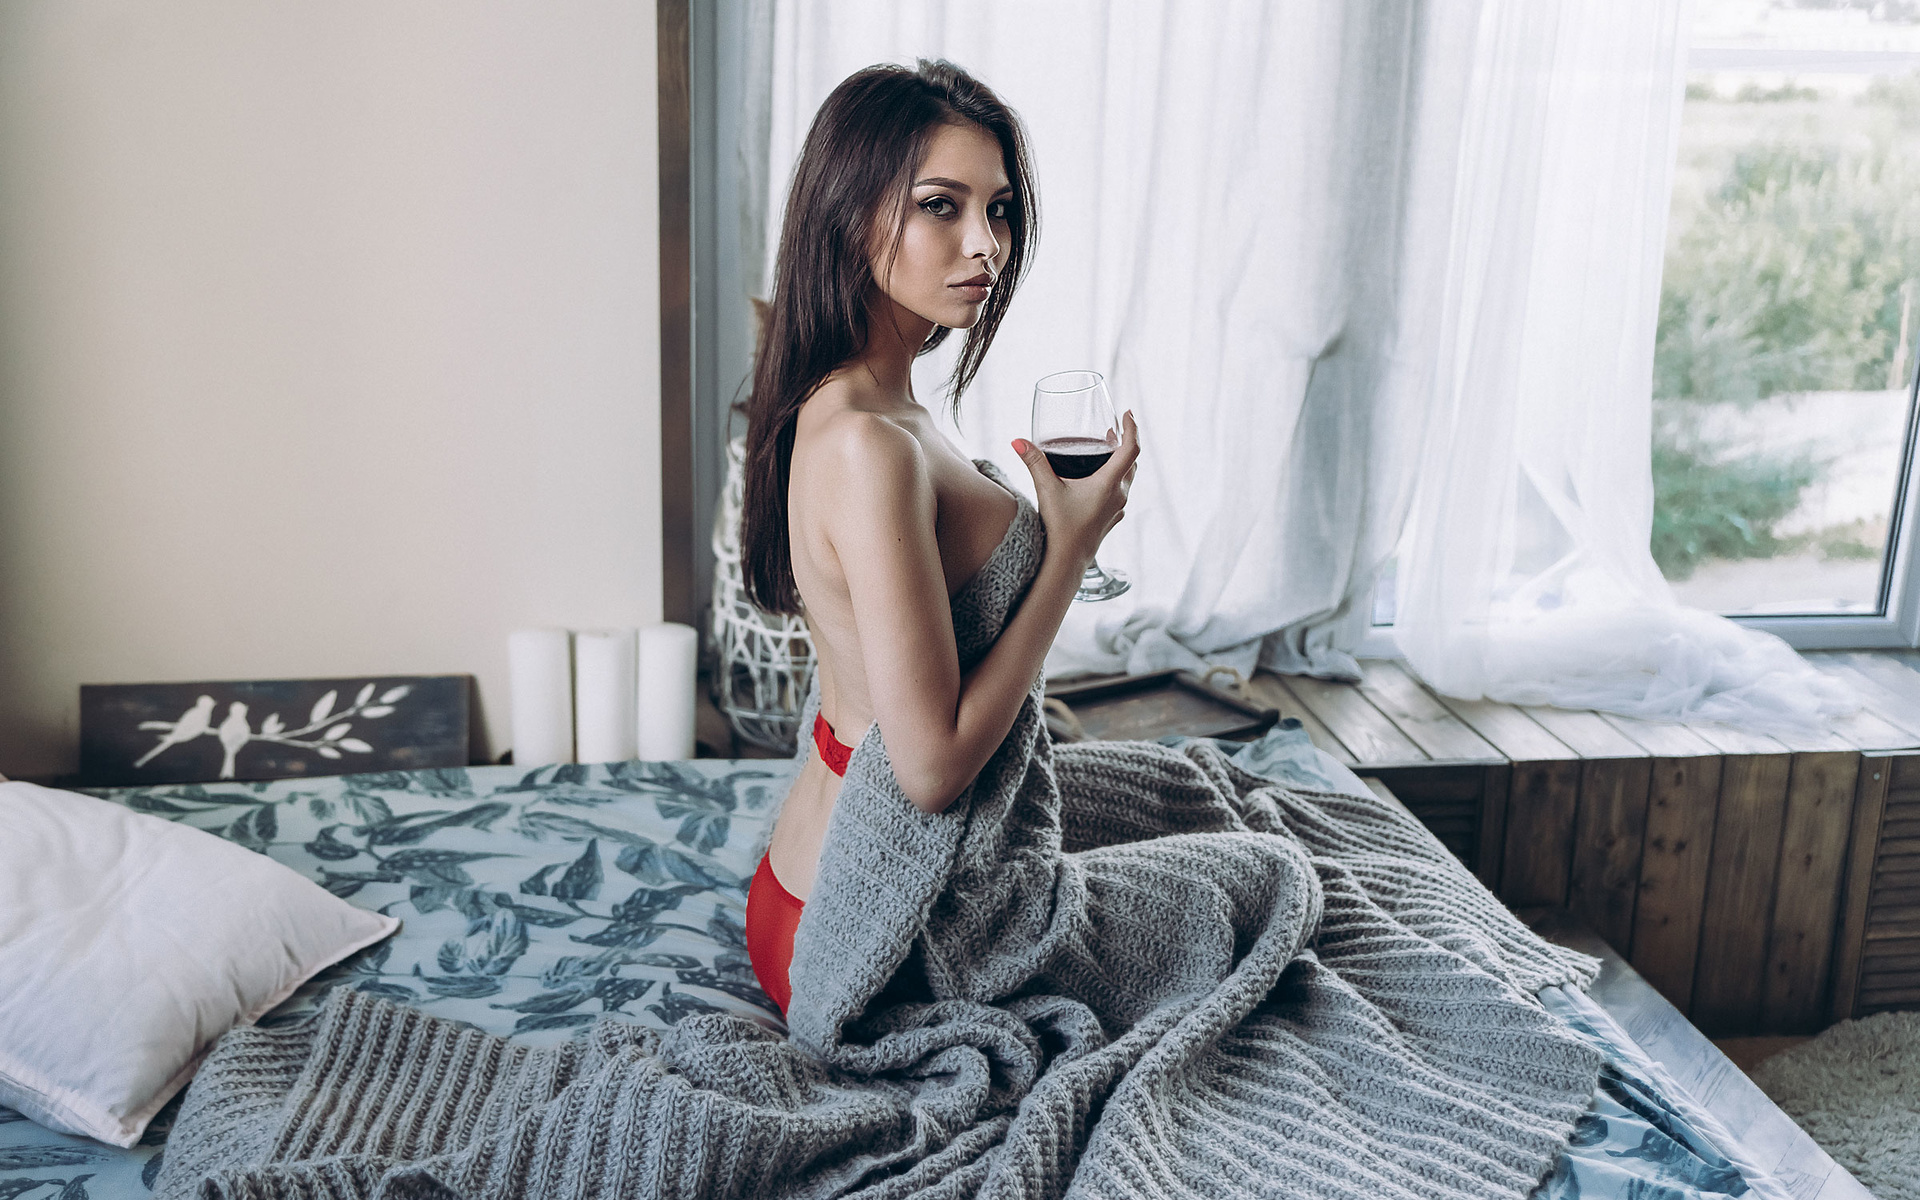 women, brunette, drinking glass, kneeling, in bed, red lingerie, boobs, wine, pillow, window